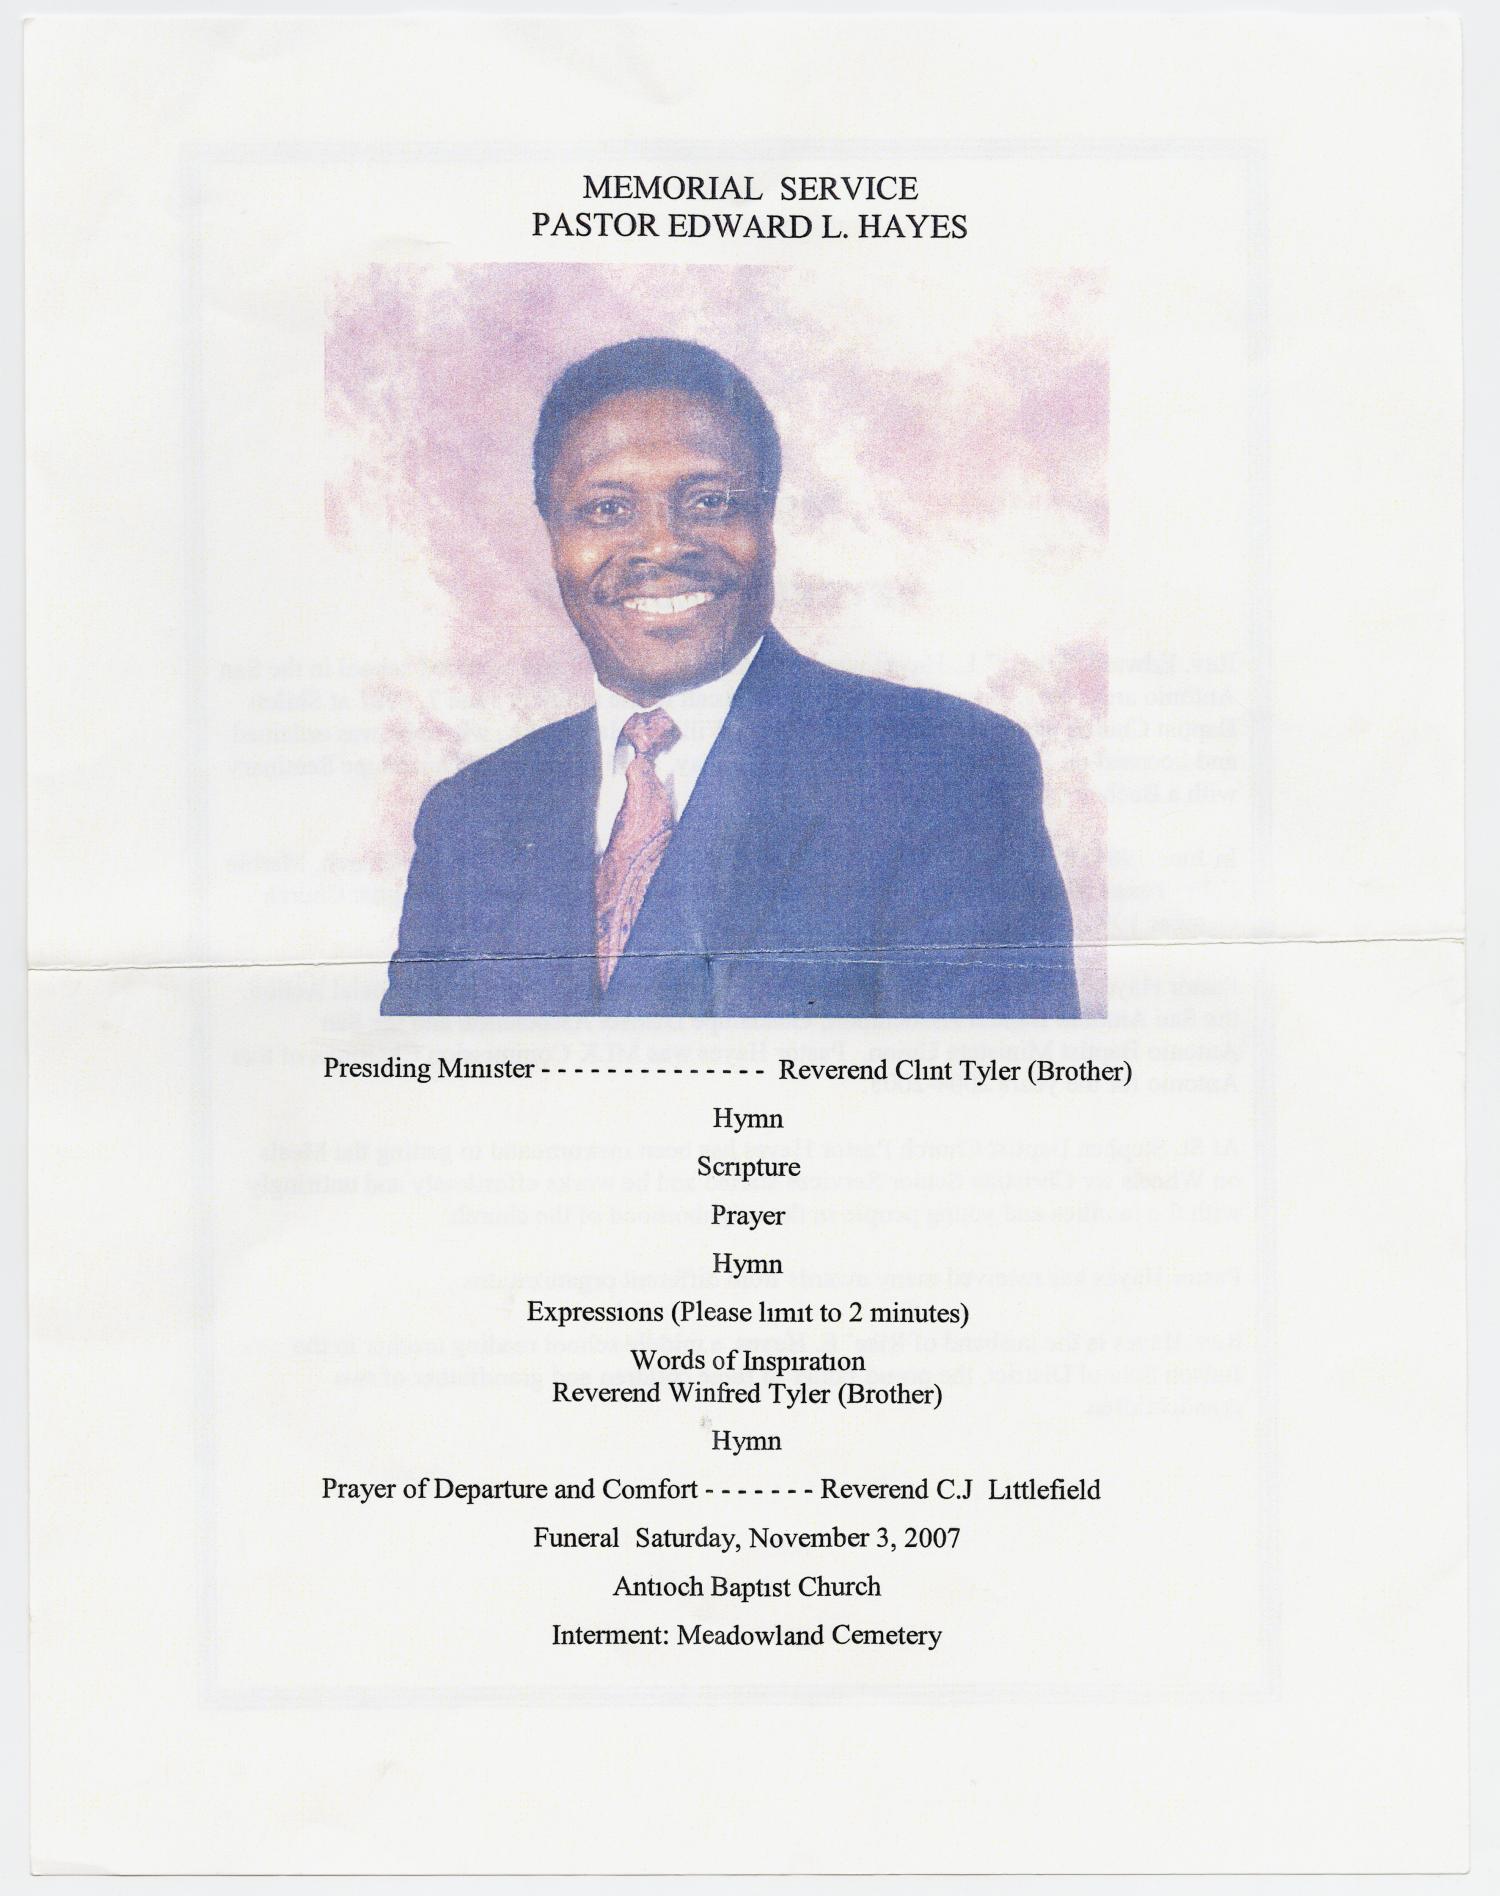 Funeral Program for Edward L. Hayes, November 3, 2007]